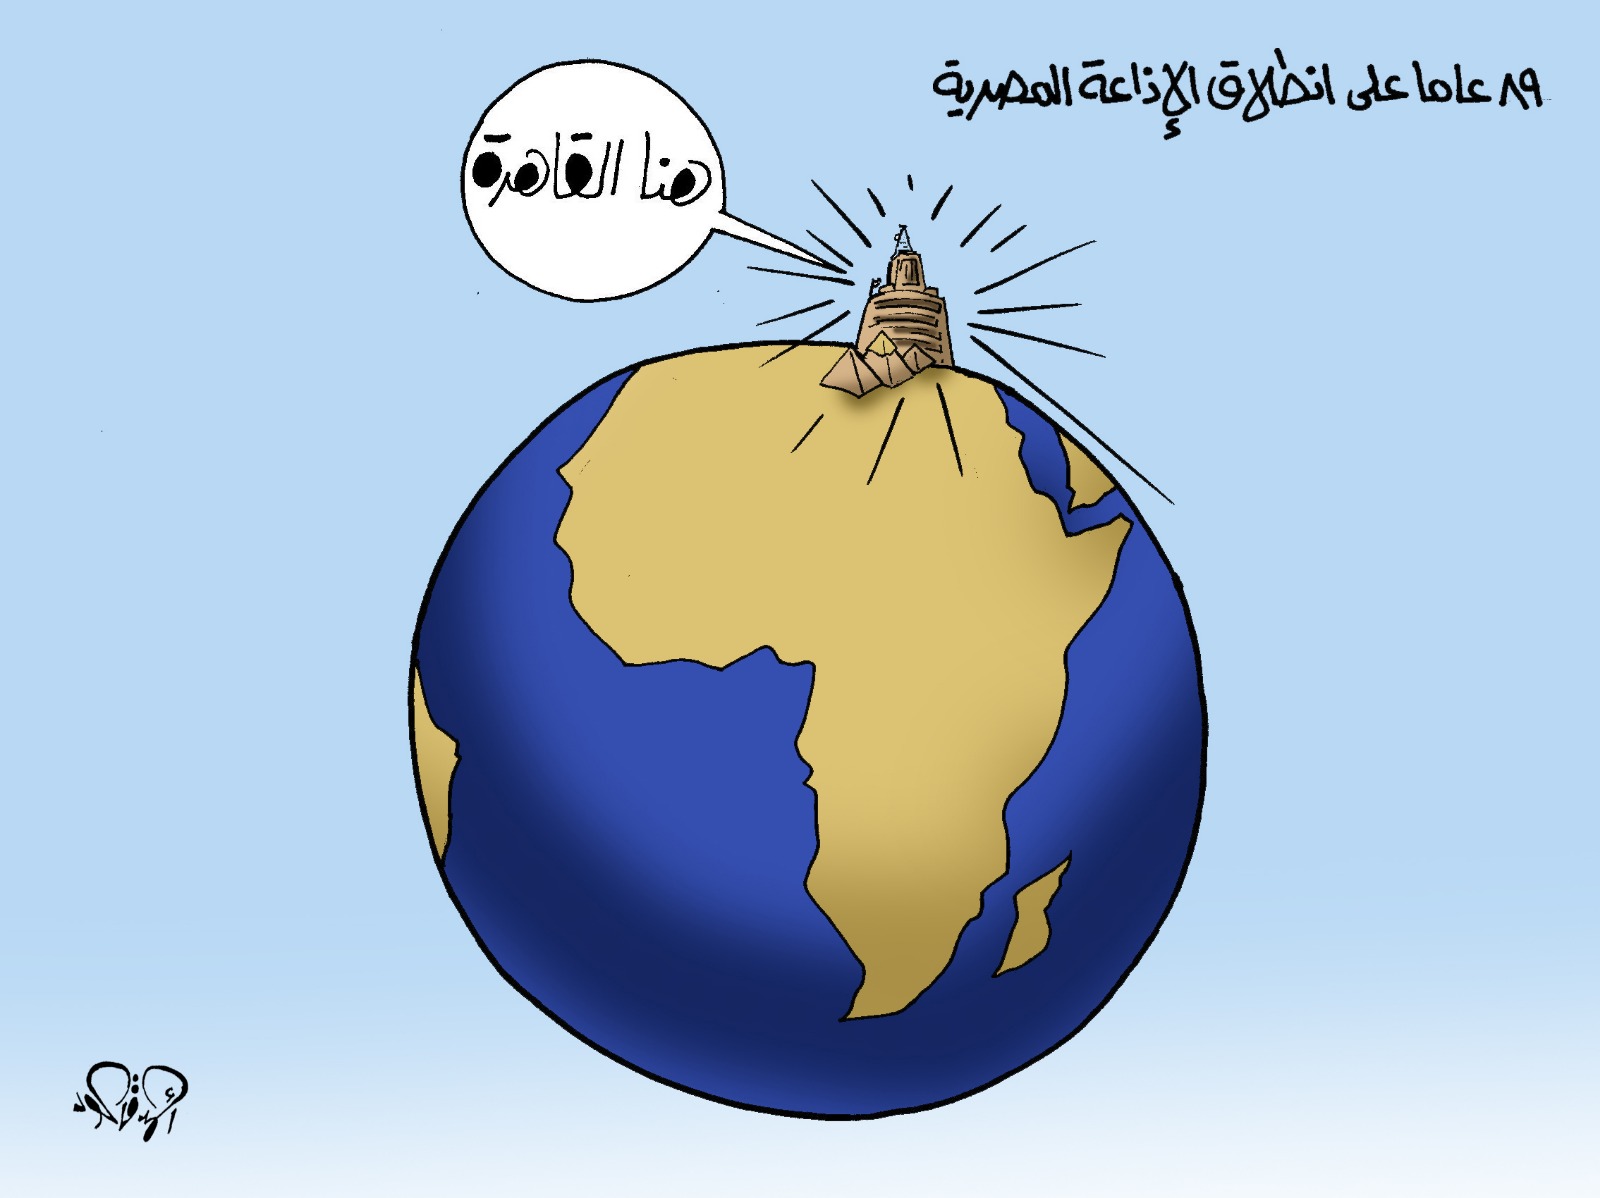 89 عامًا على انطلاق الإذاعة المصرية فى كاريكاتير اليوم السابع